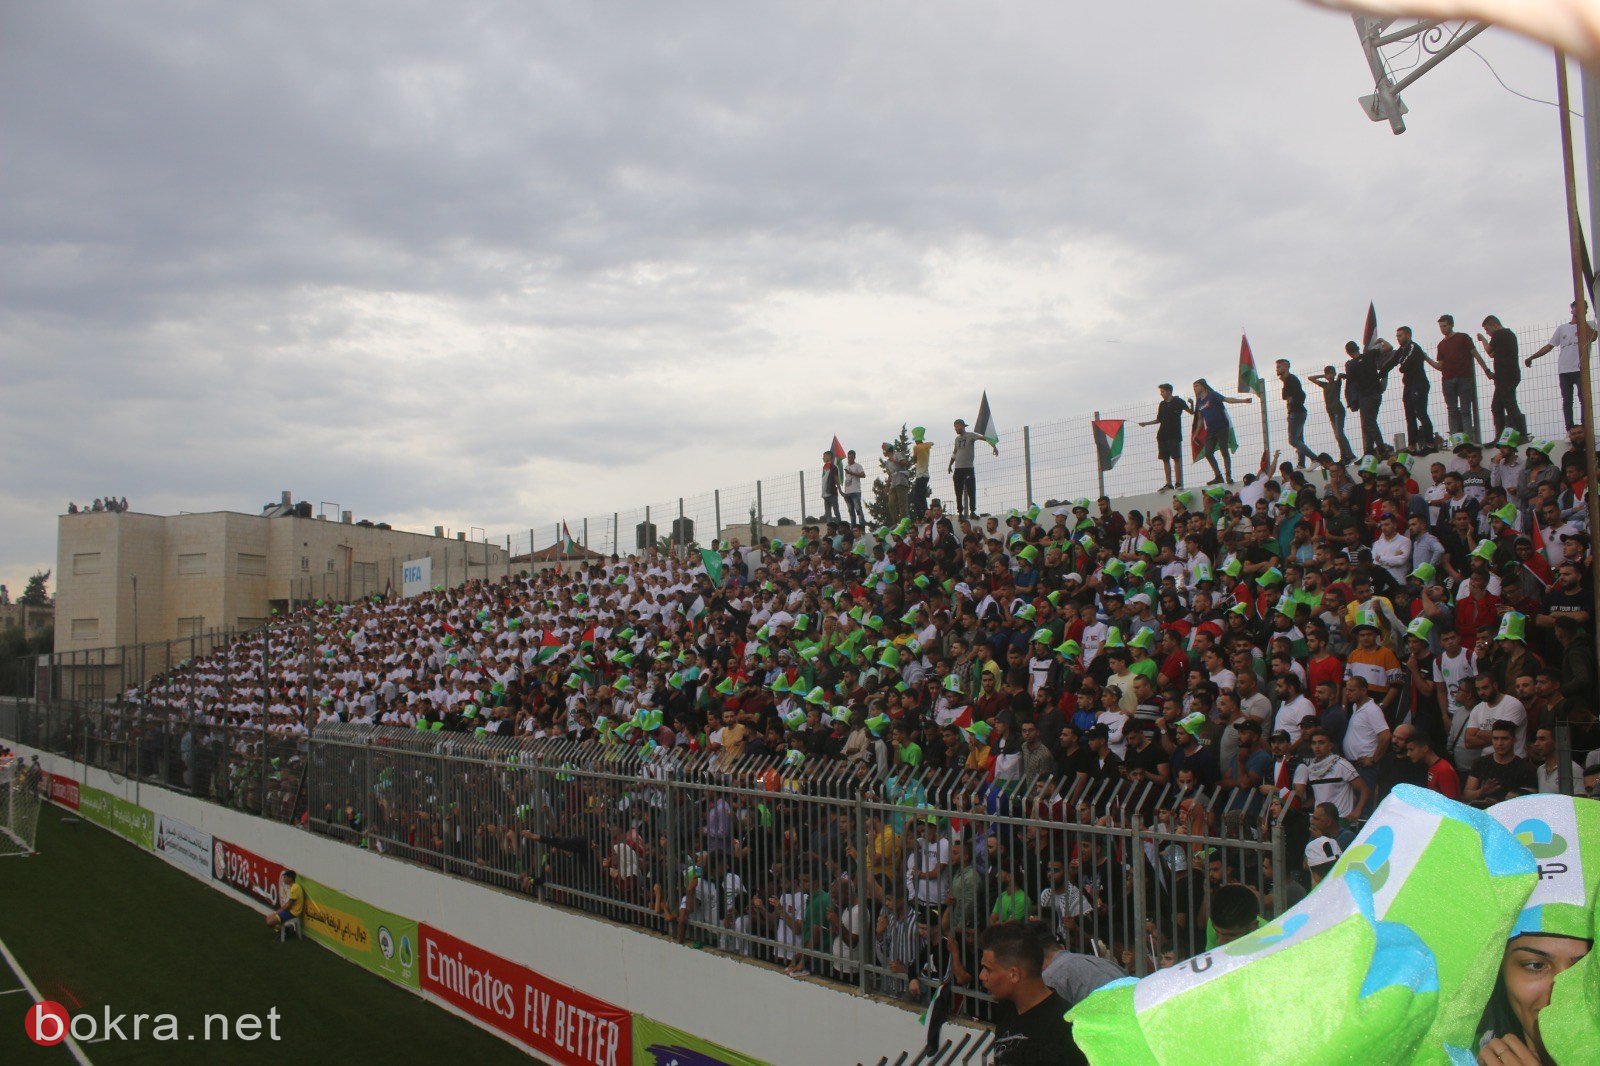 صور اضافية من مباراة فلسطين والسعودية-1